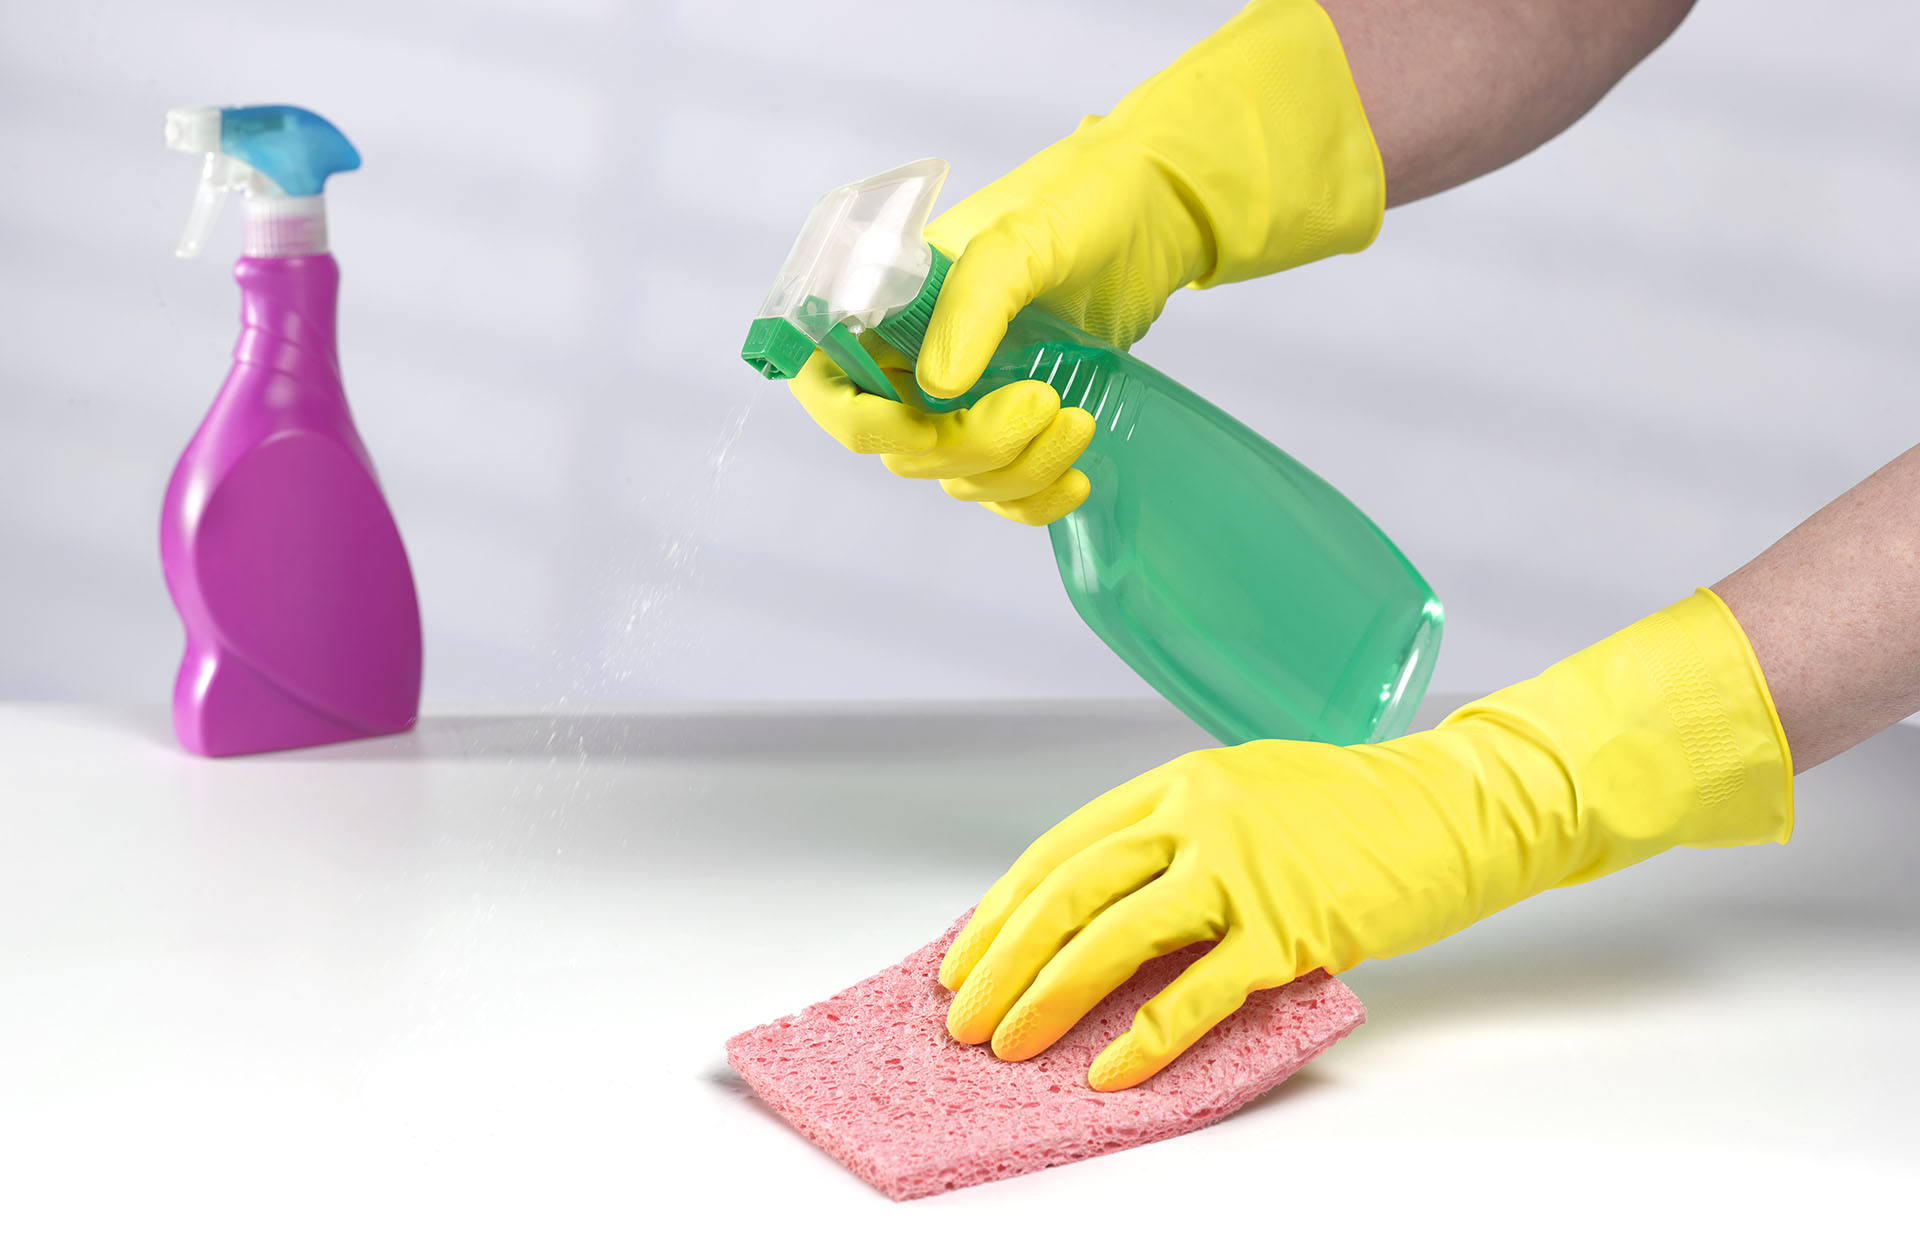 La limpieza de superficies ayuda a evitar contagios